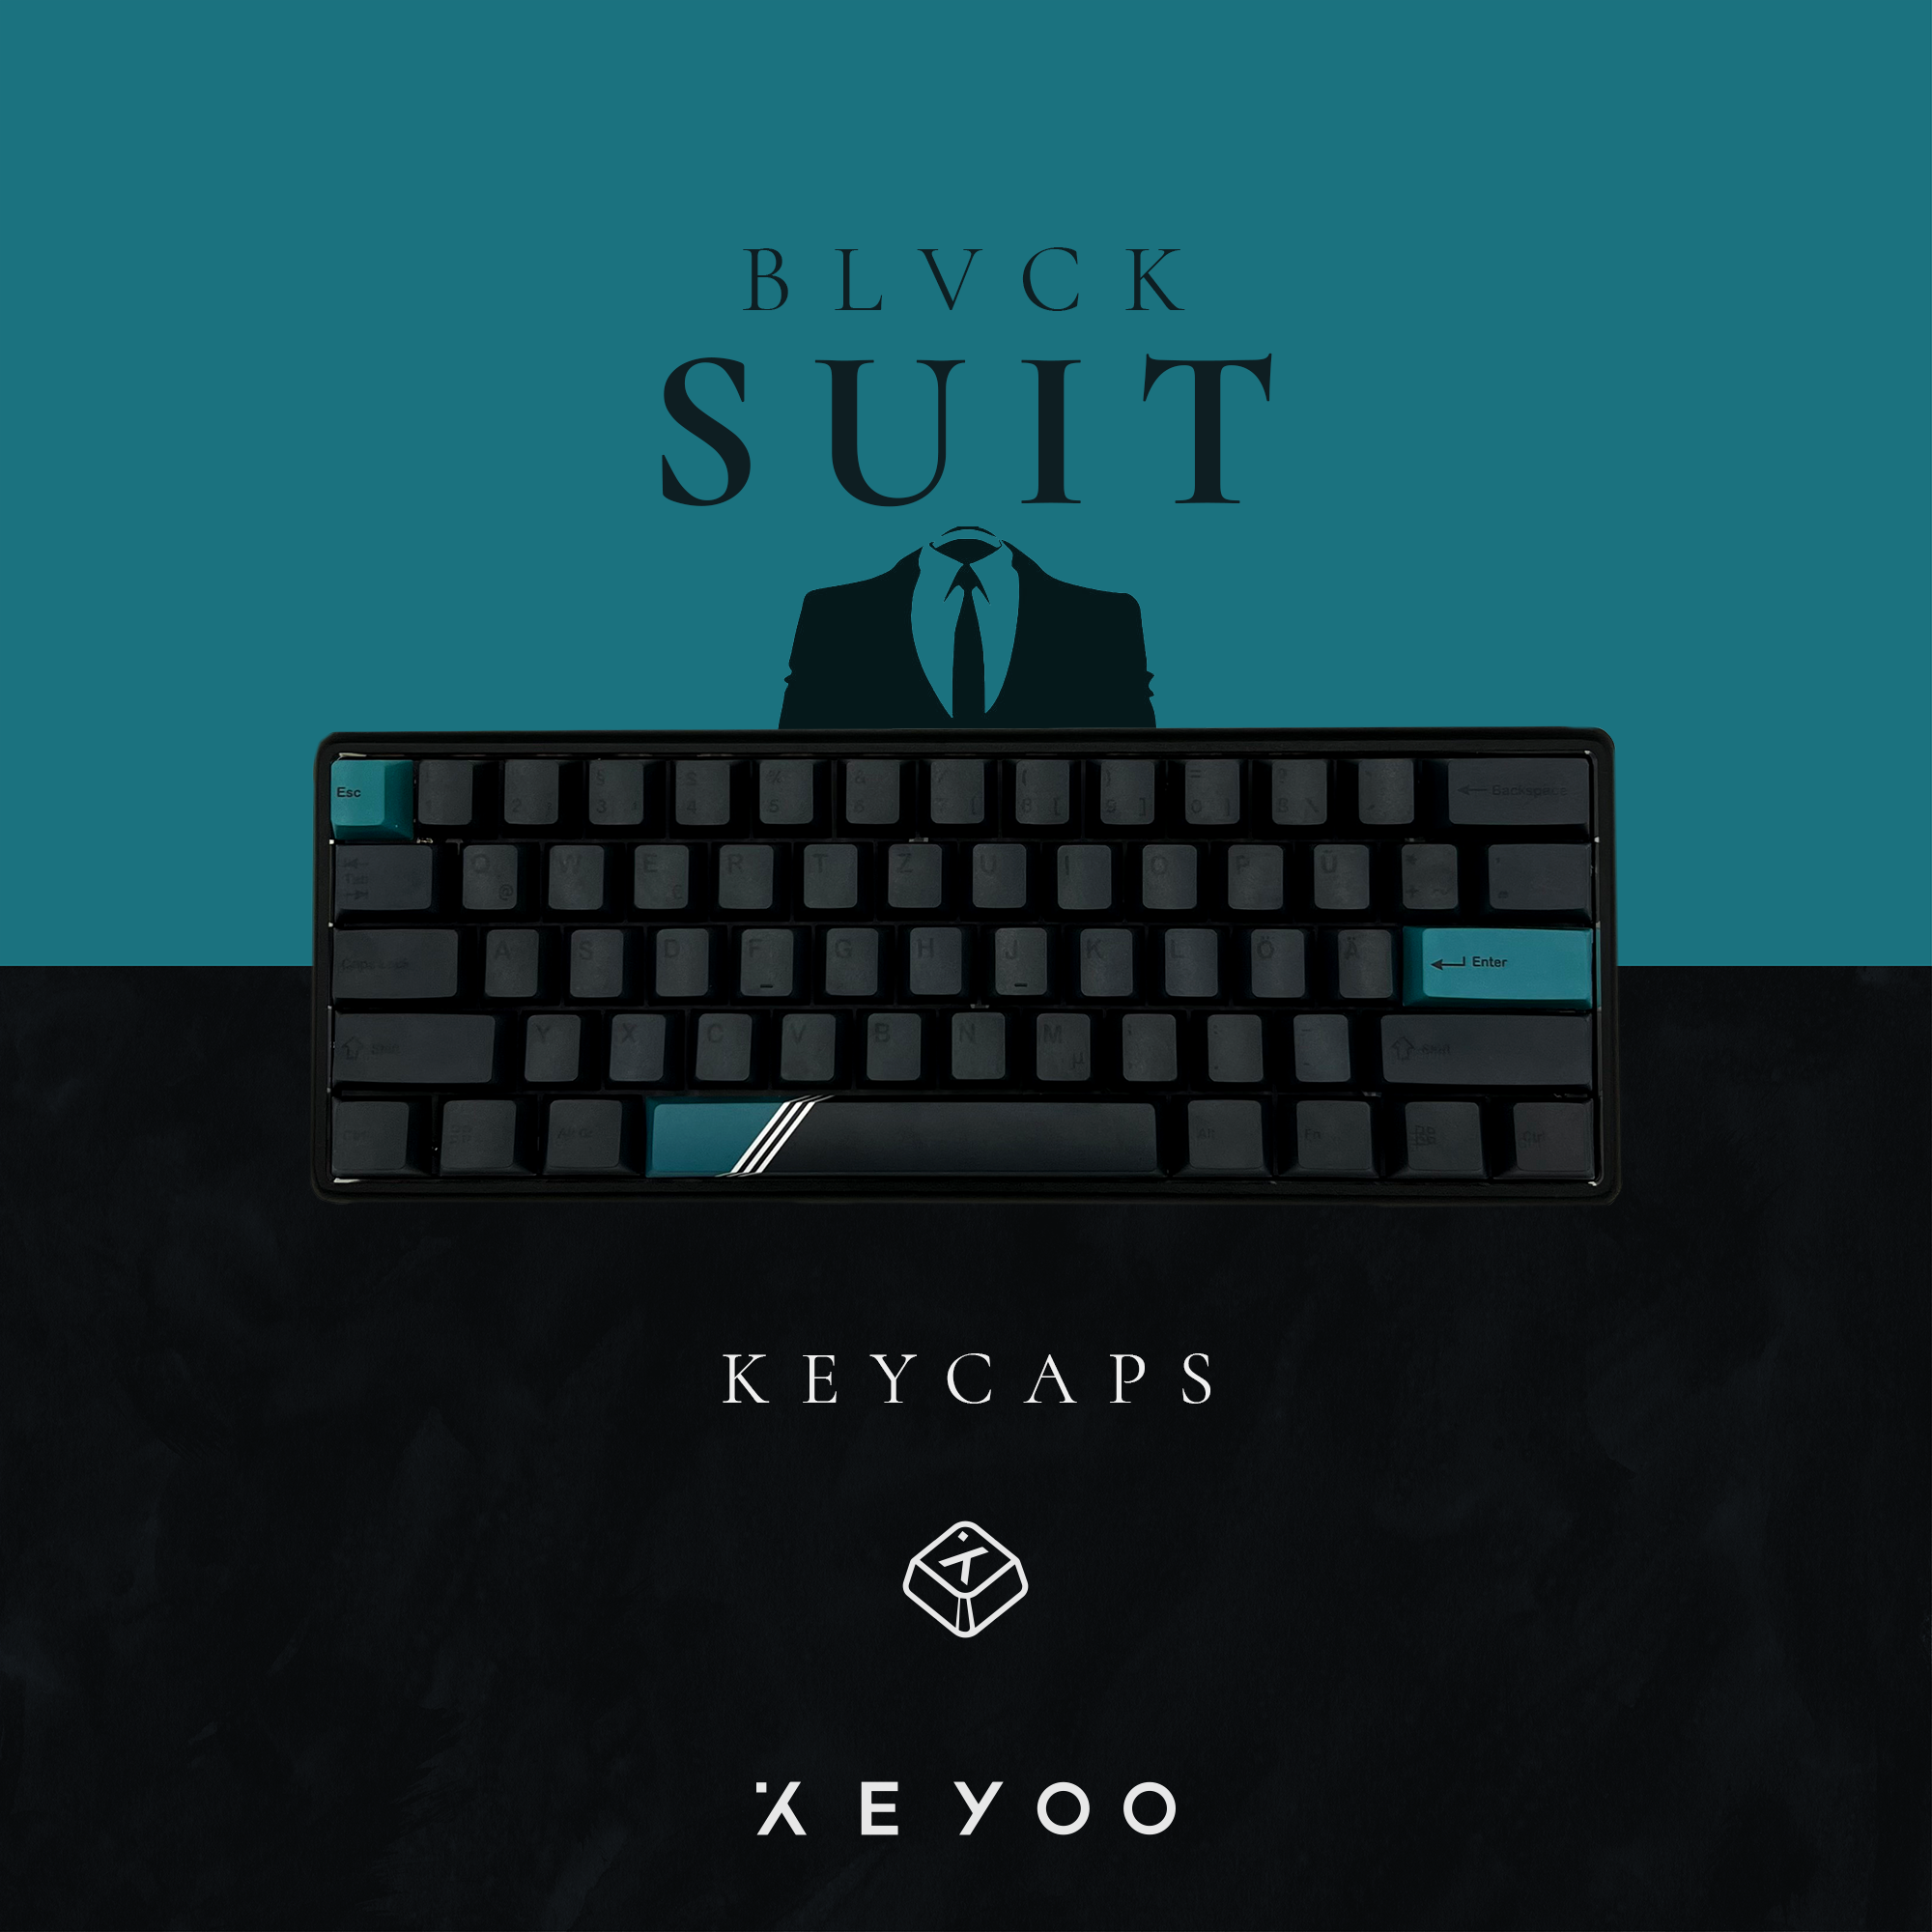 Tastaturerweiterung, KEYOO Black Suit, Mechanisch